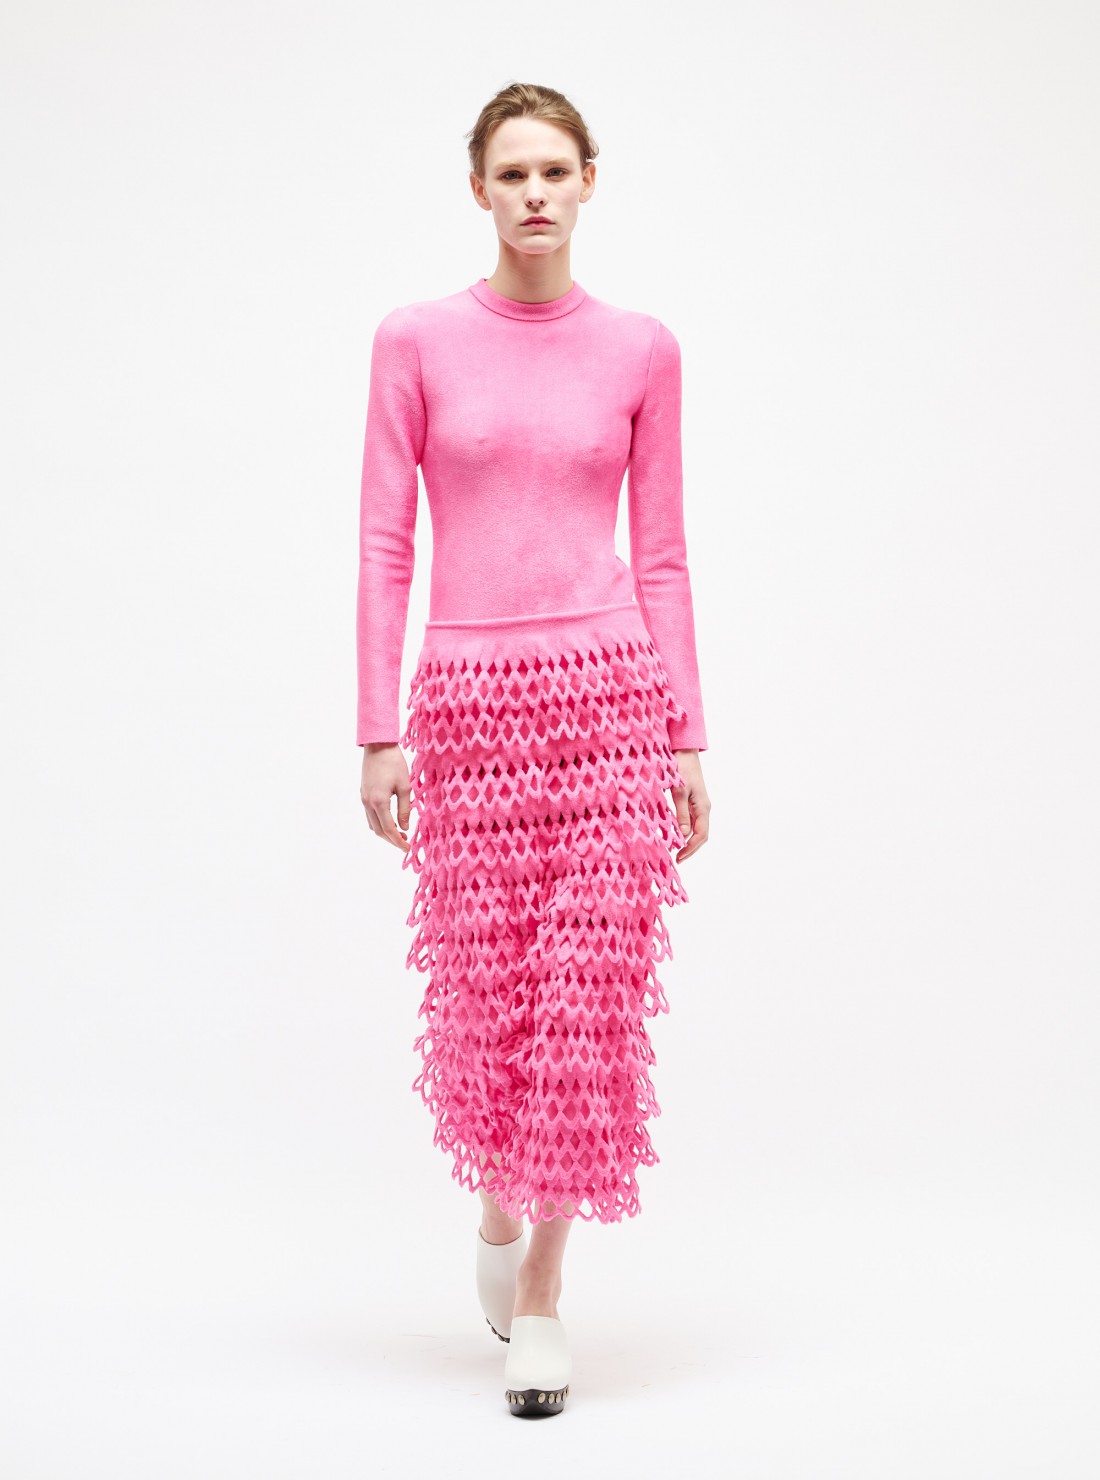 Velvet knit dress